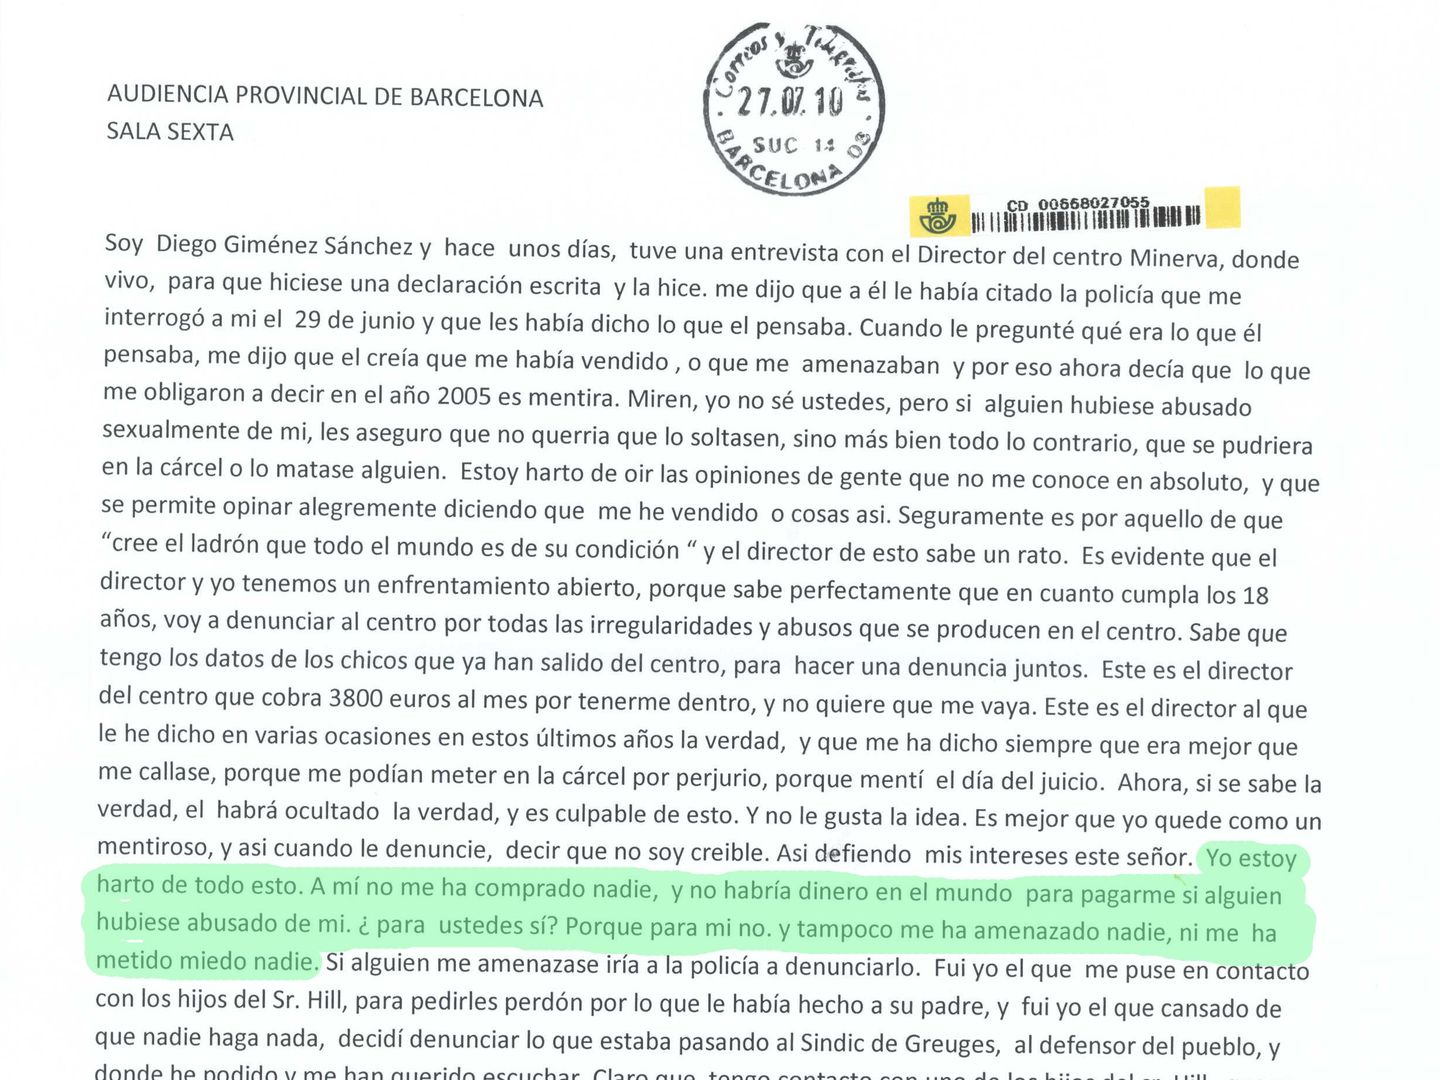 Extracto de la carta que Giménez remitió a la Audiencia Provincial el 27 de julio de 2010